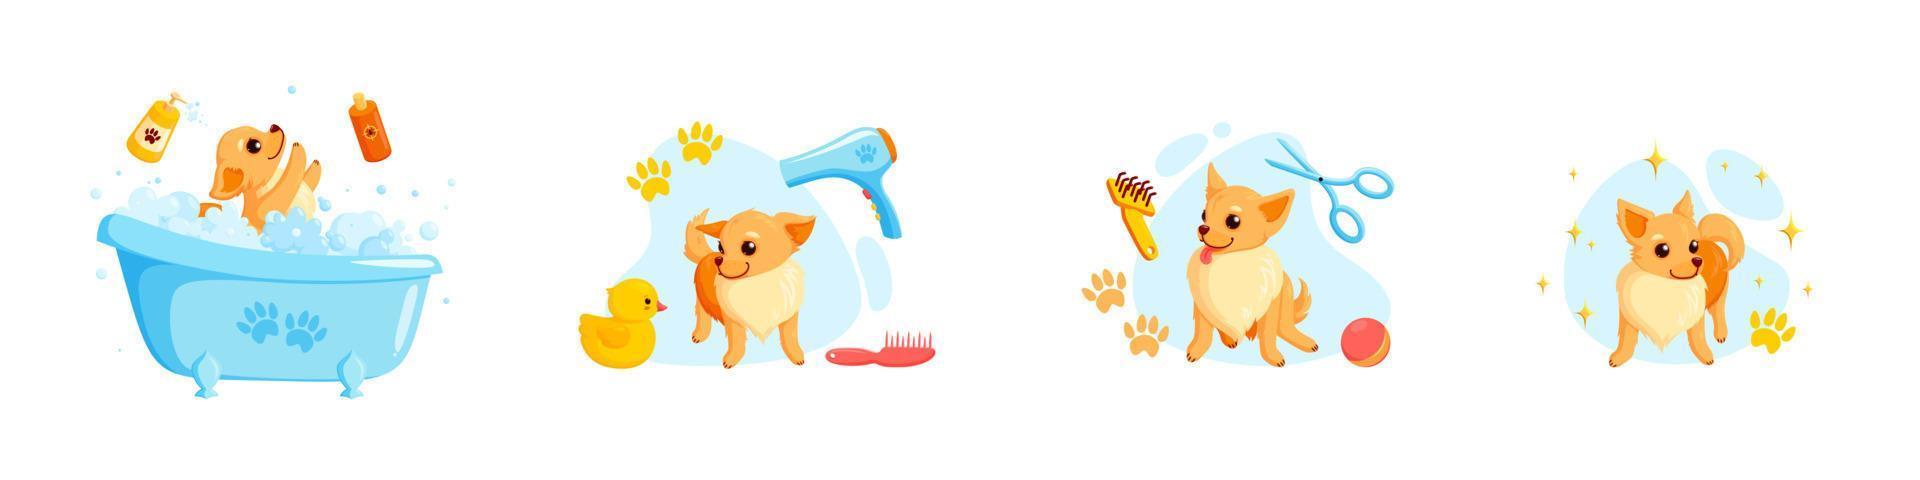 aseo de perros en un baño con champú para mascotas, peines y patitos de goma. Cachorro chihuahua juguetón en servicio de aseo. ilustración vectorial vector